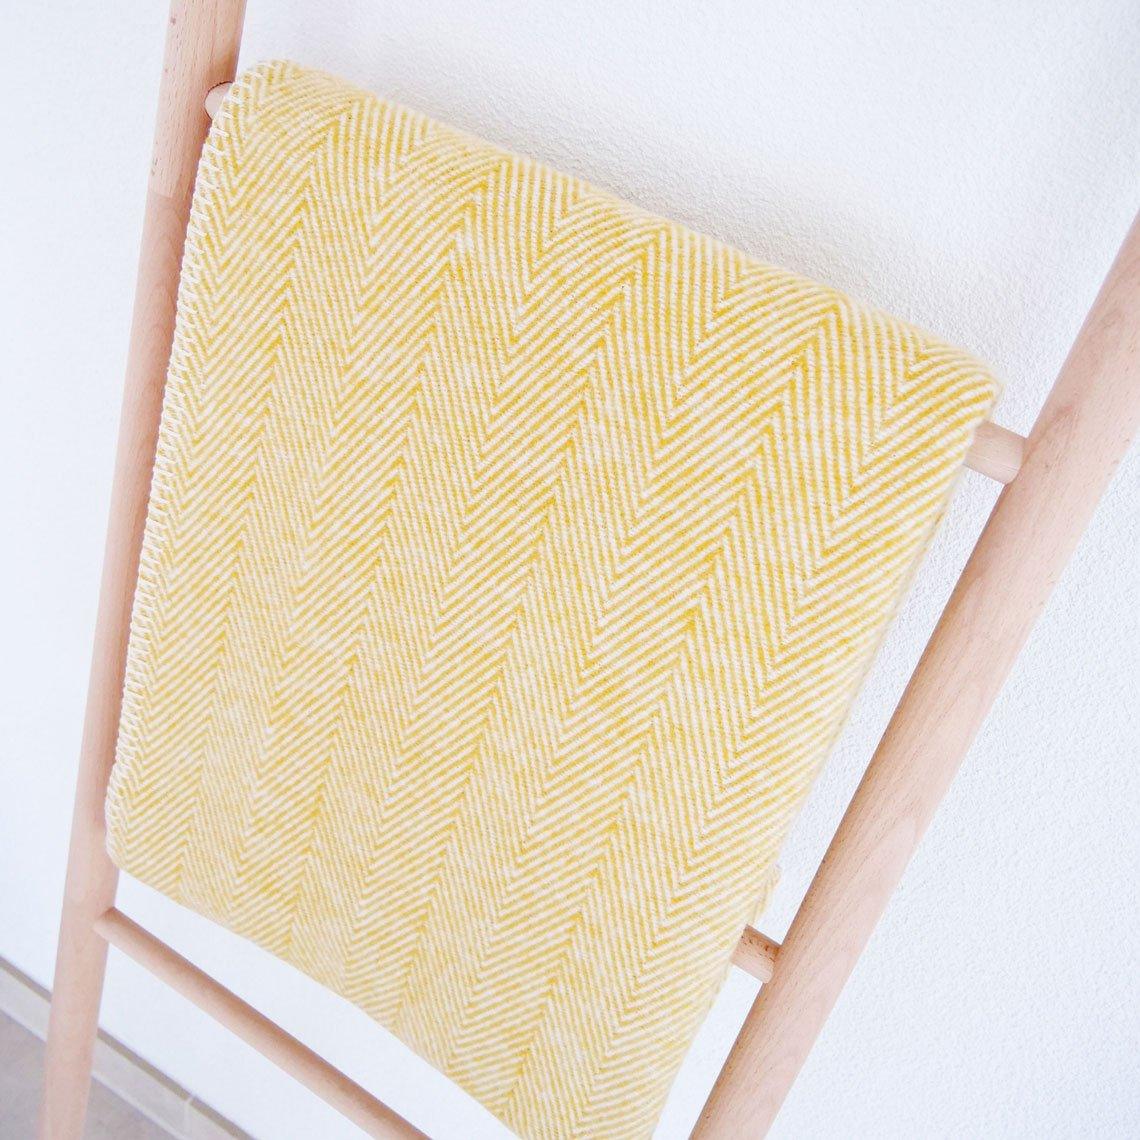 Baumwolldecke auf Leiter hängend in der Farbe gelb